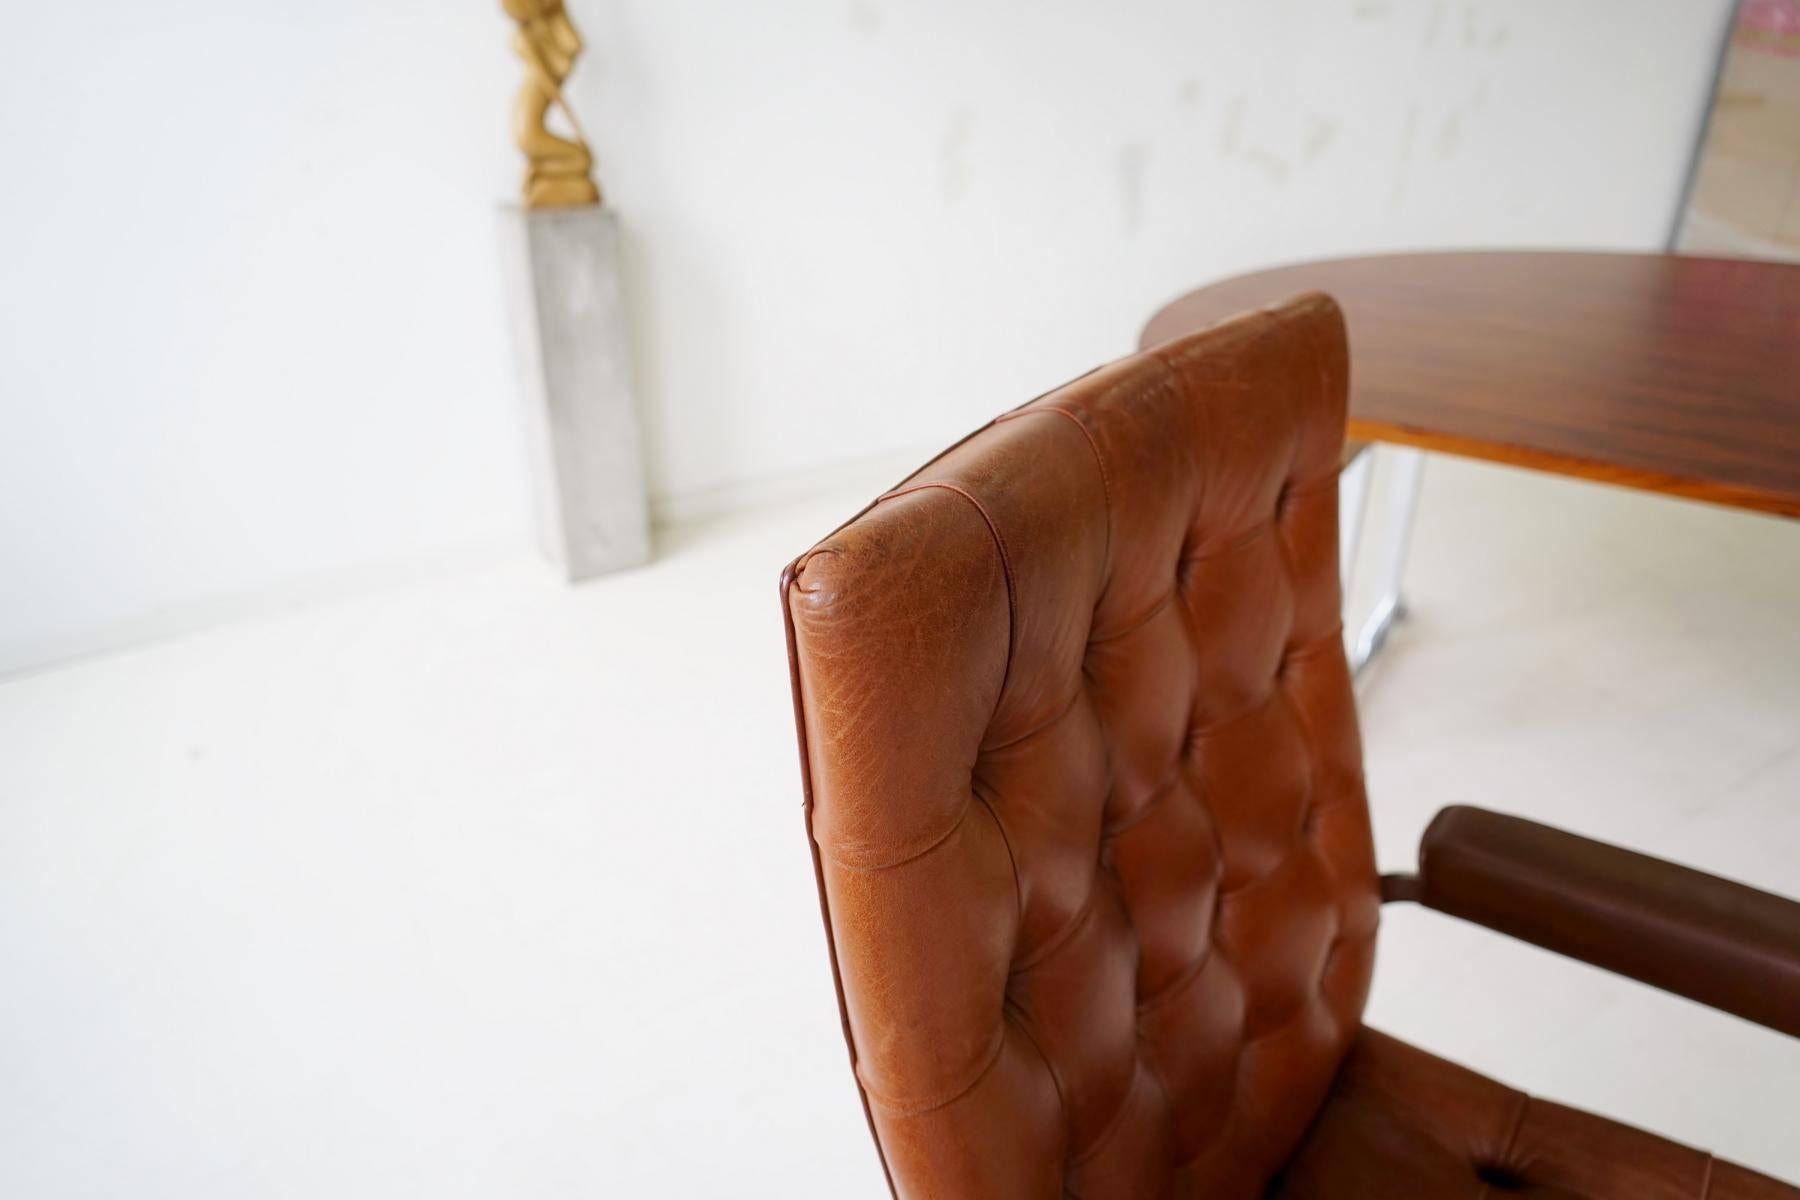 Swiss De Sede RH-304 Leather Robert Haussmann Cantilever Office Desk Chair, Bauhaus